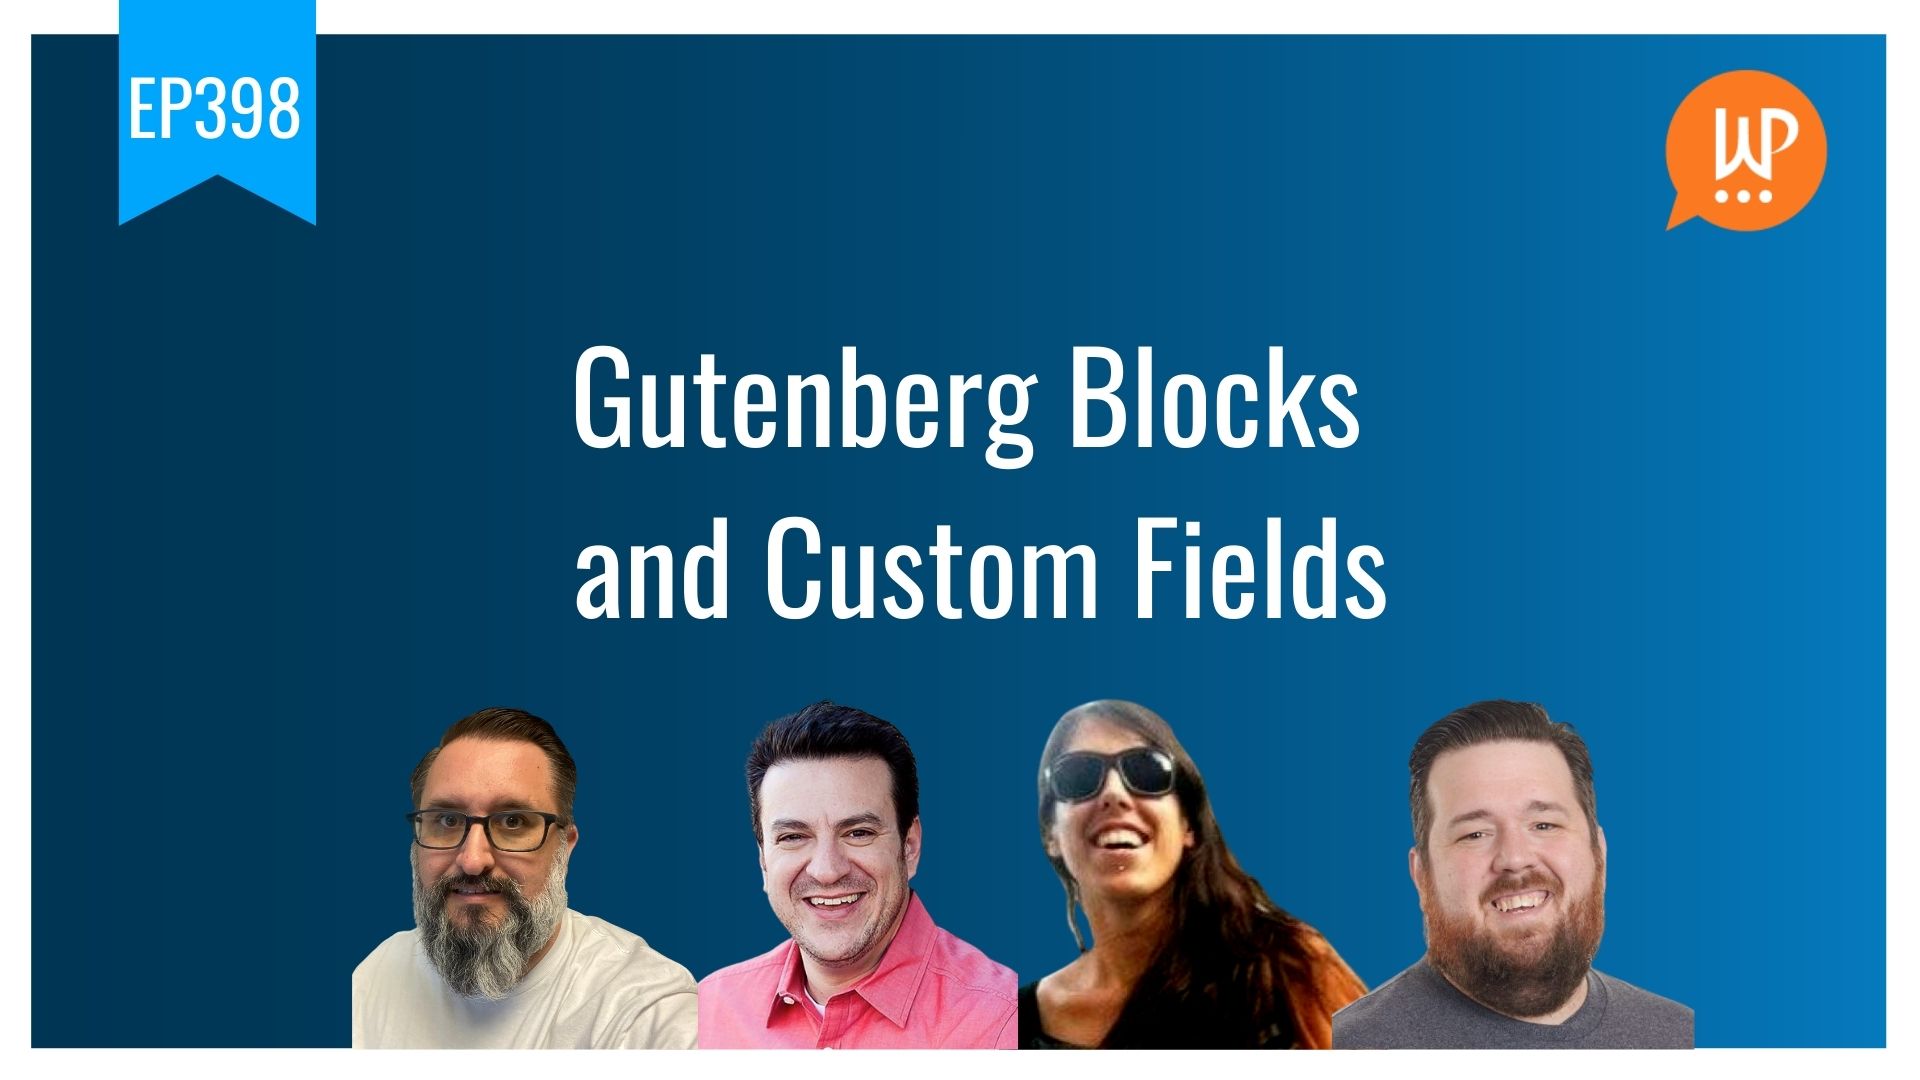 EP398 - Gutenberg Blocks and Custom Fields